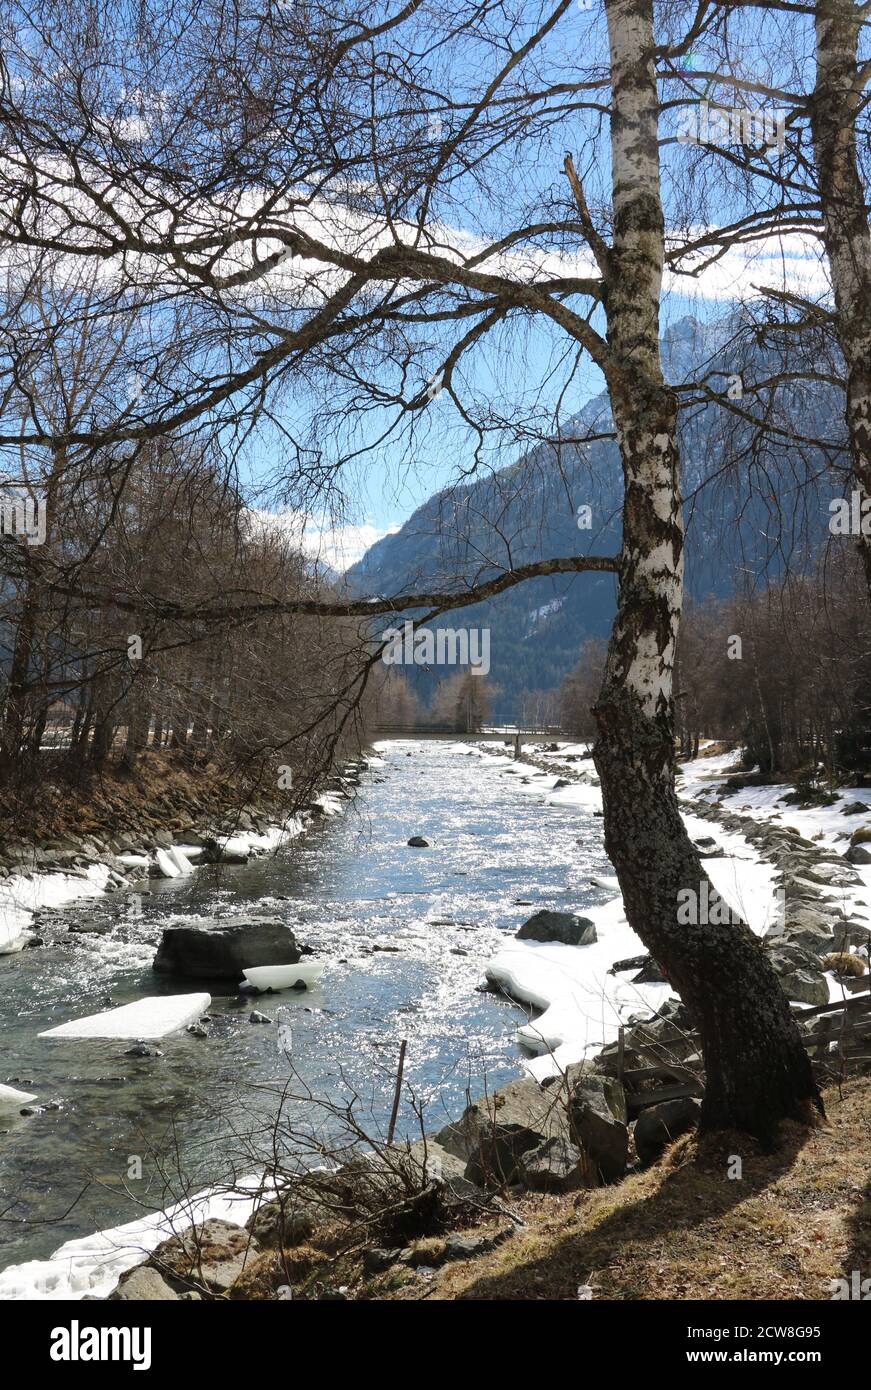 Paysage alpin en hiver avec rivière et bouleau Tyrol Autriche Banque D'Images